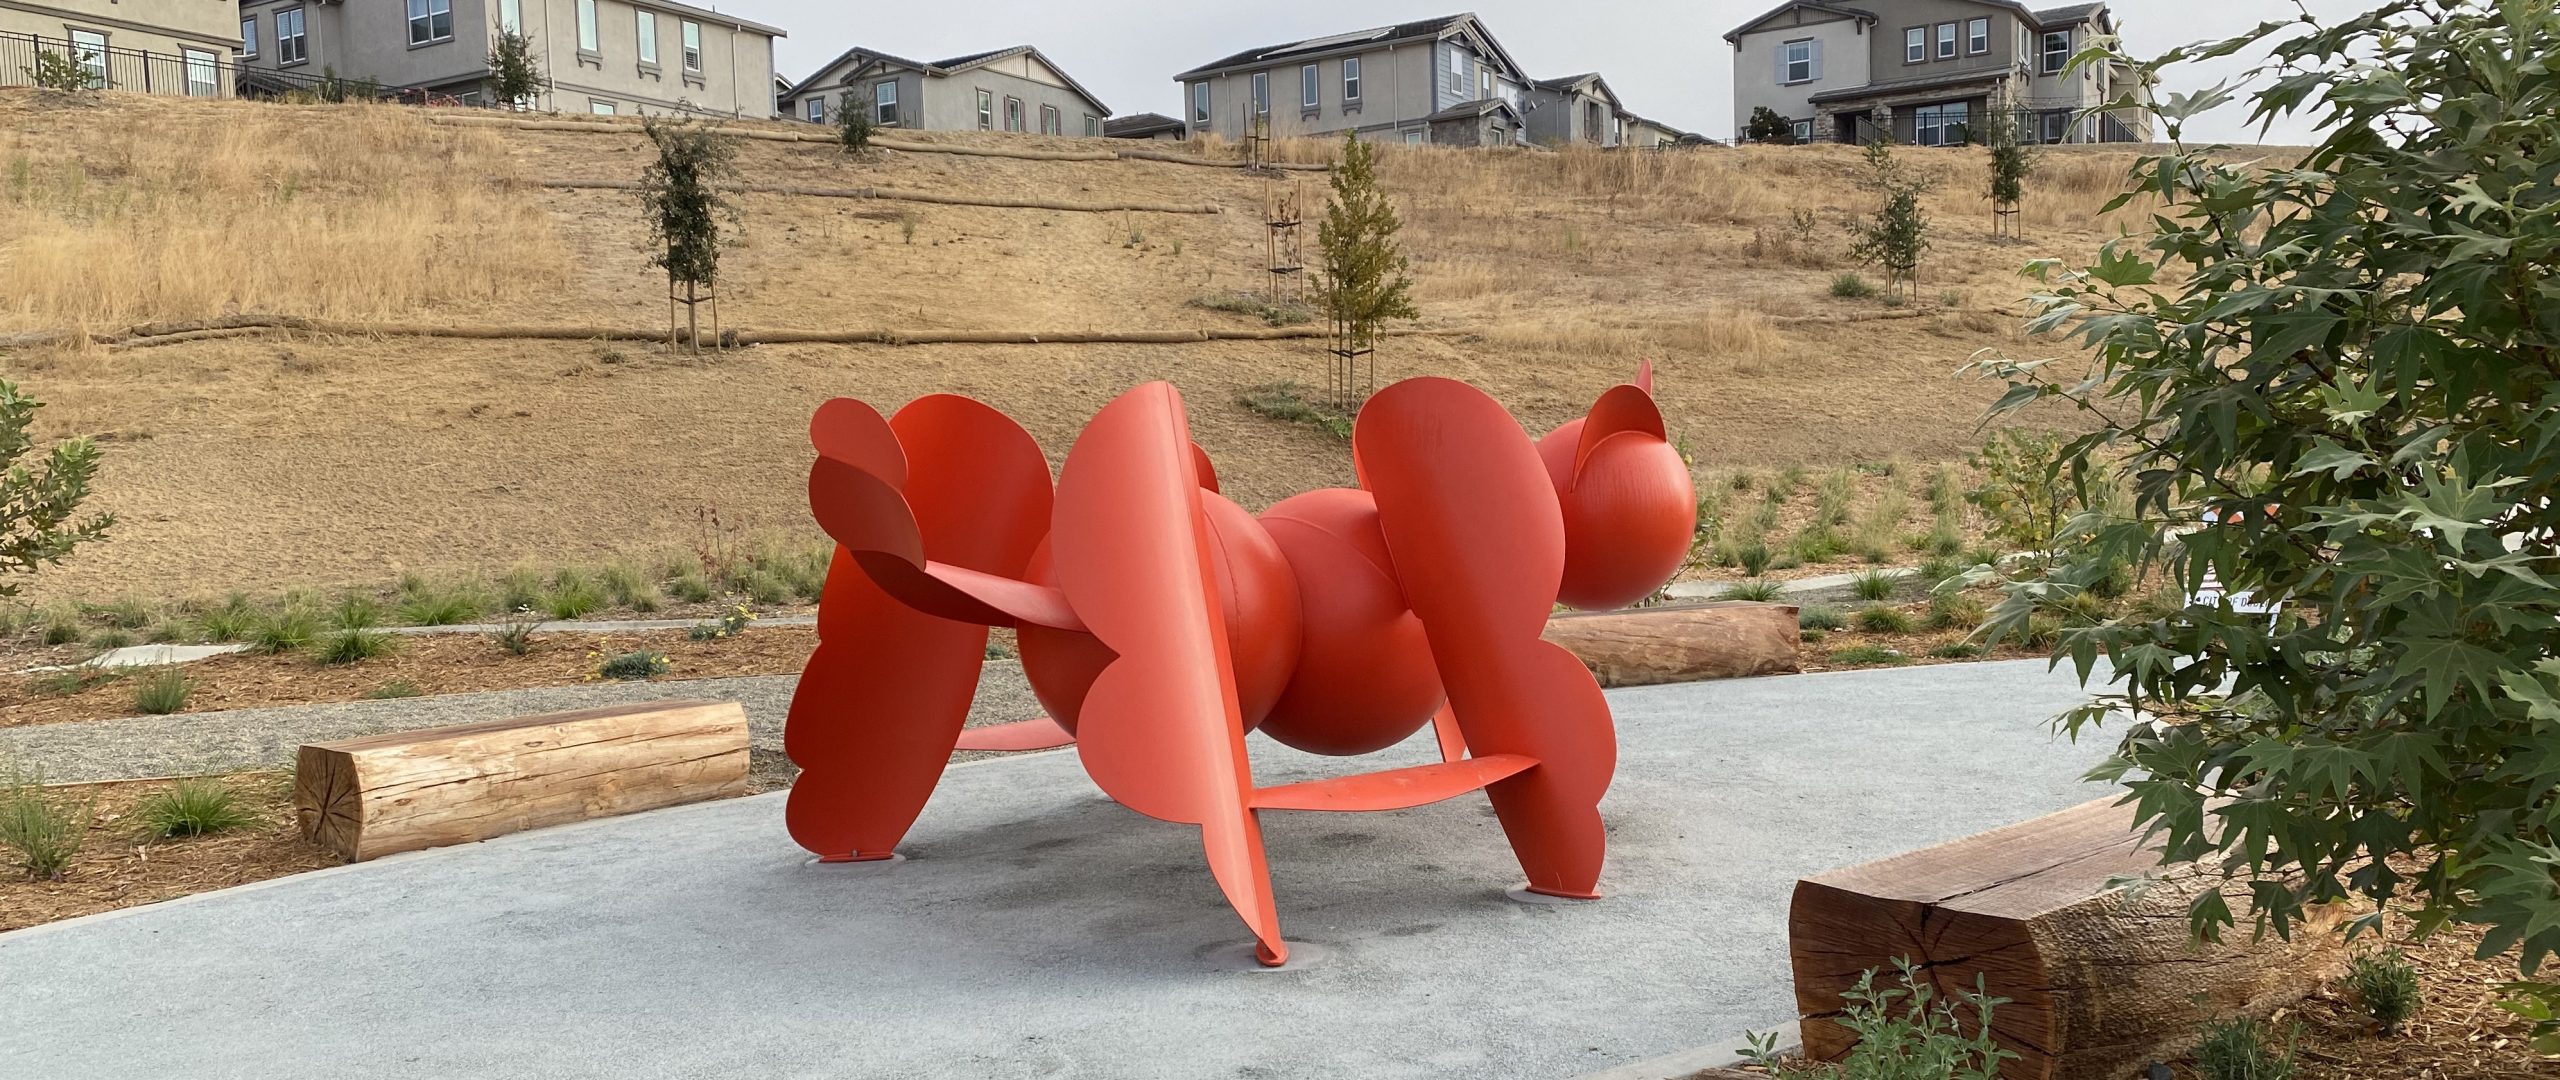 Cat playground sculpture